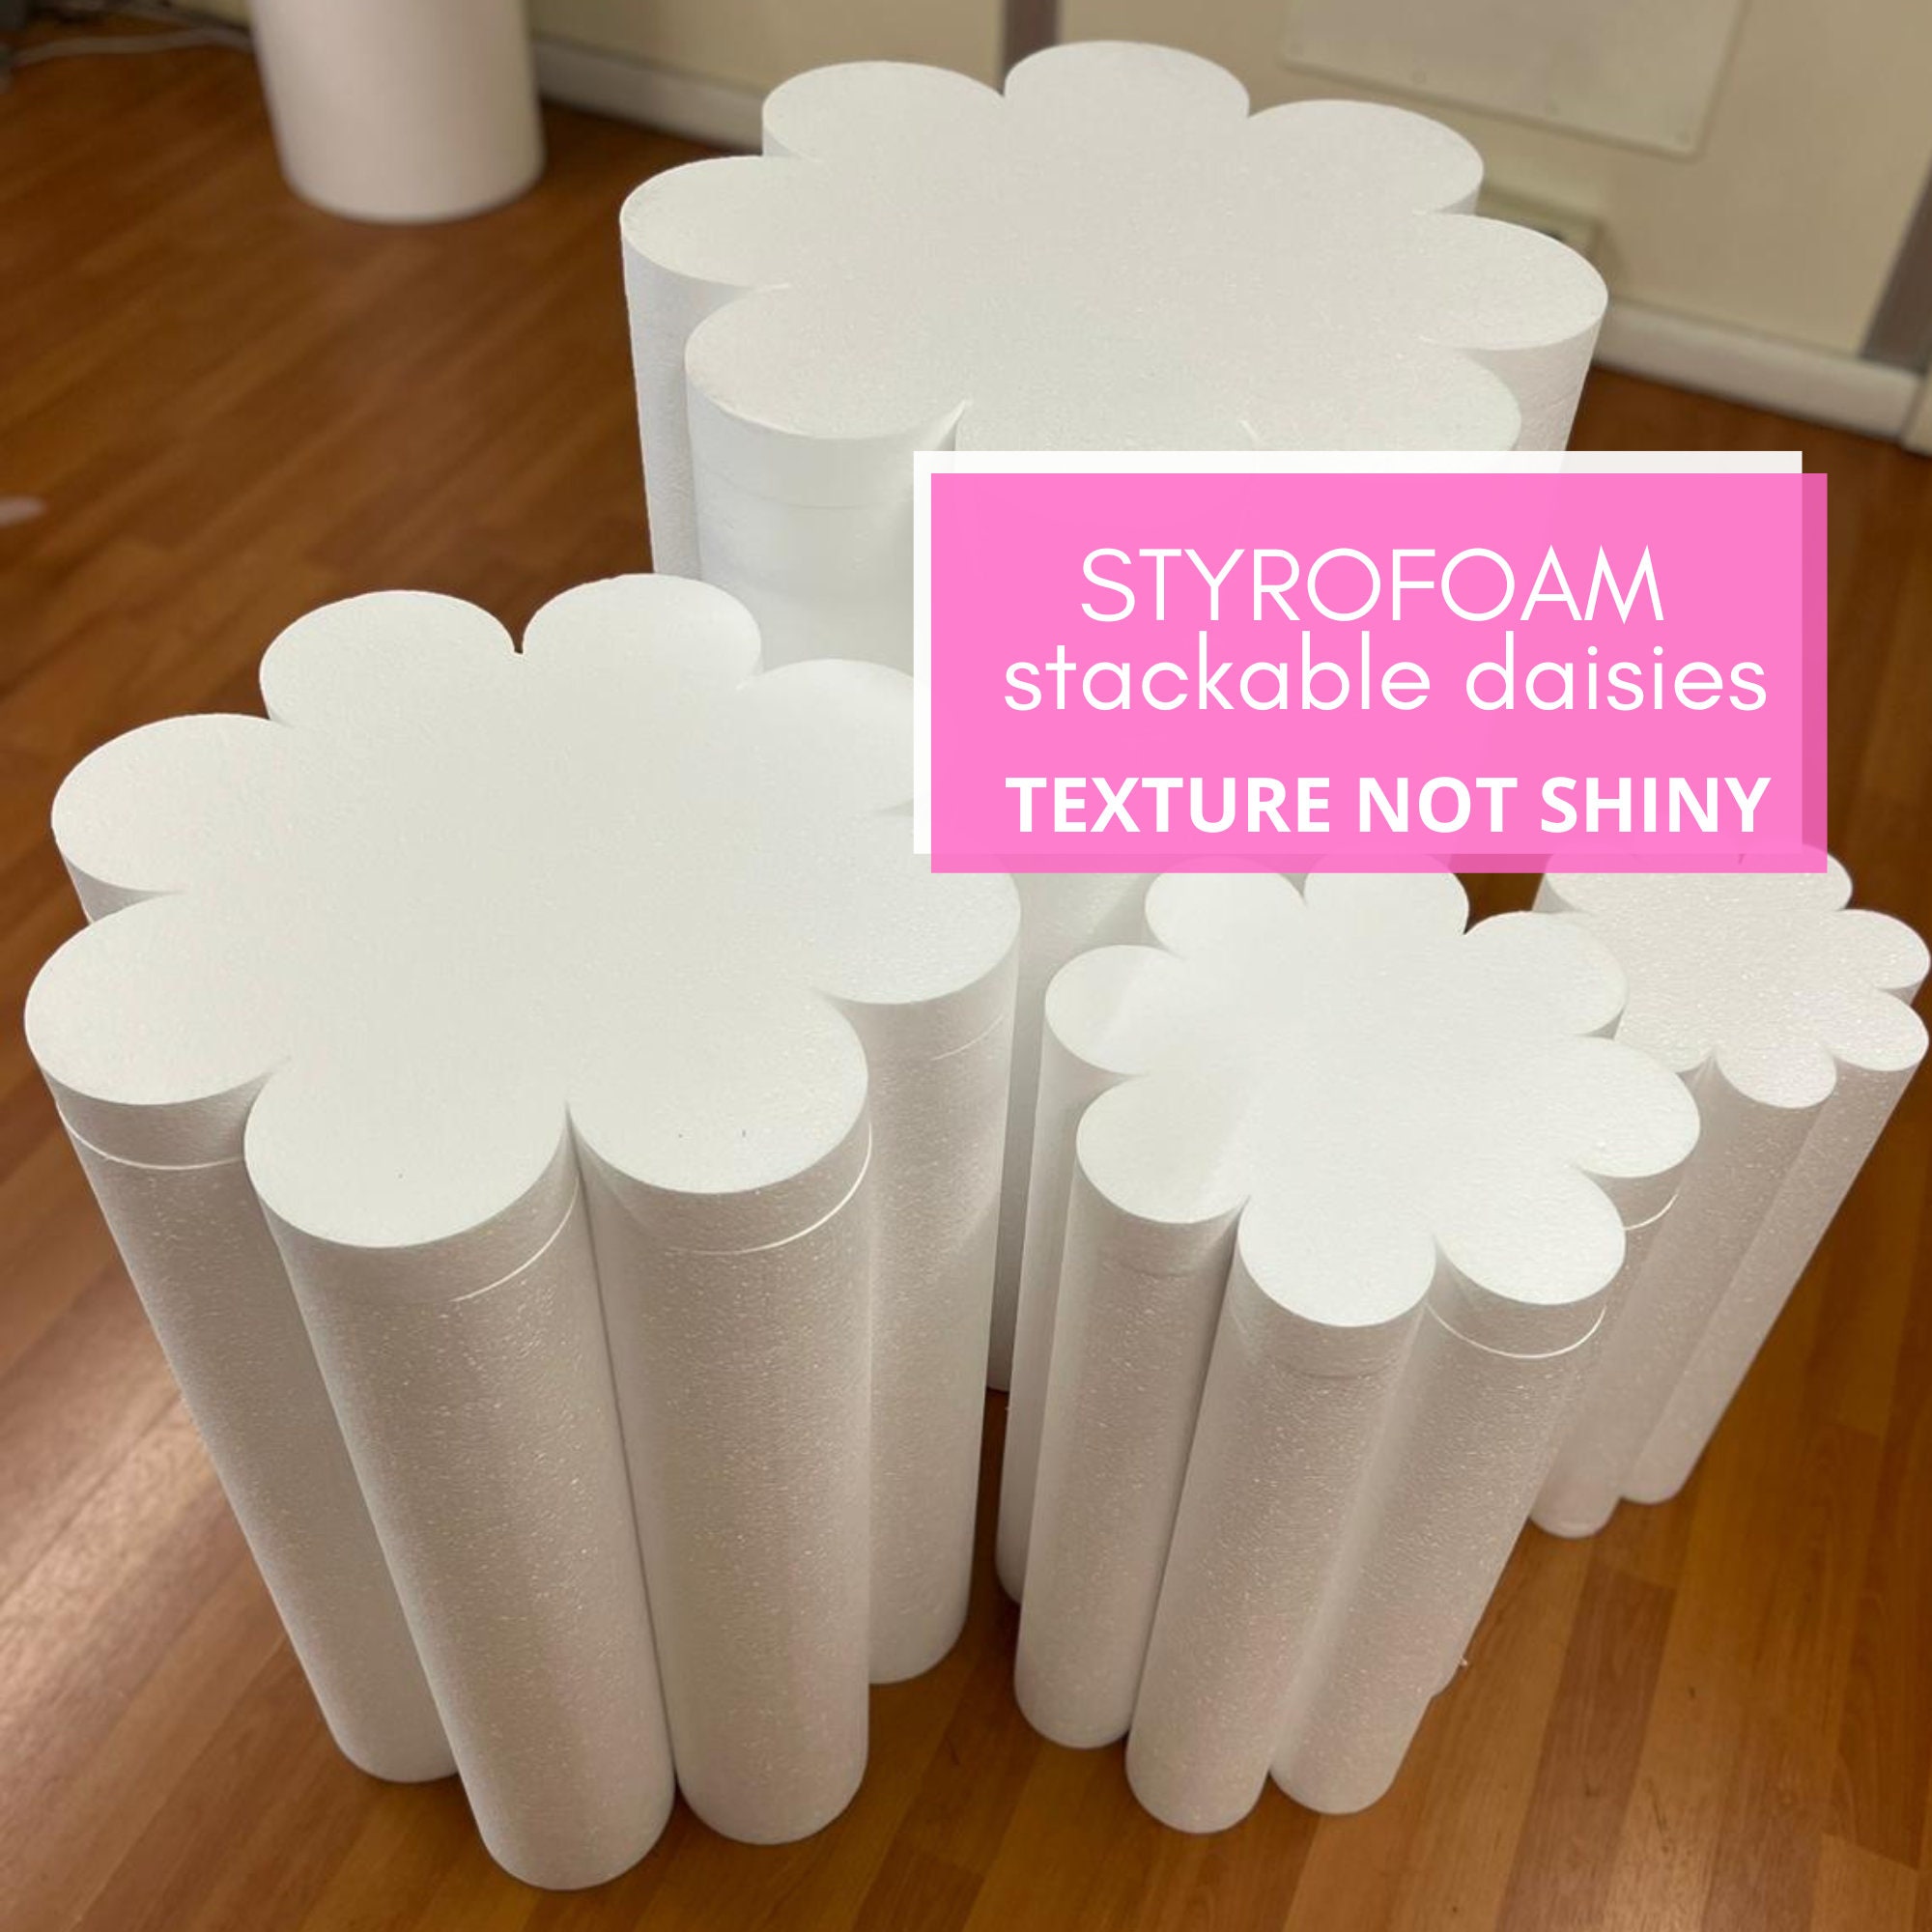 Large styrofoam snowflake - Rialma Party Ideas